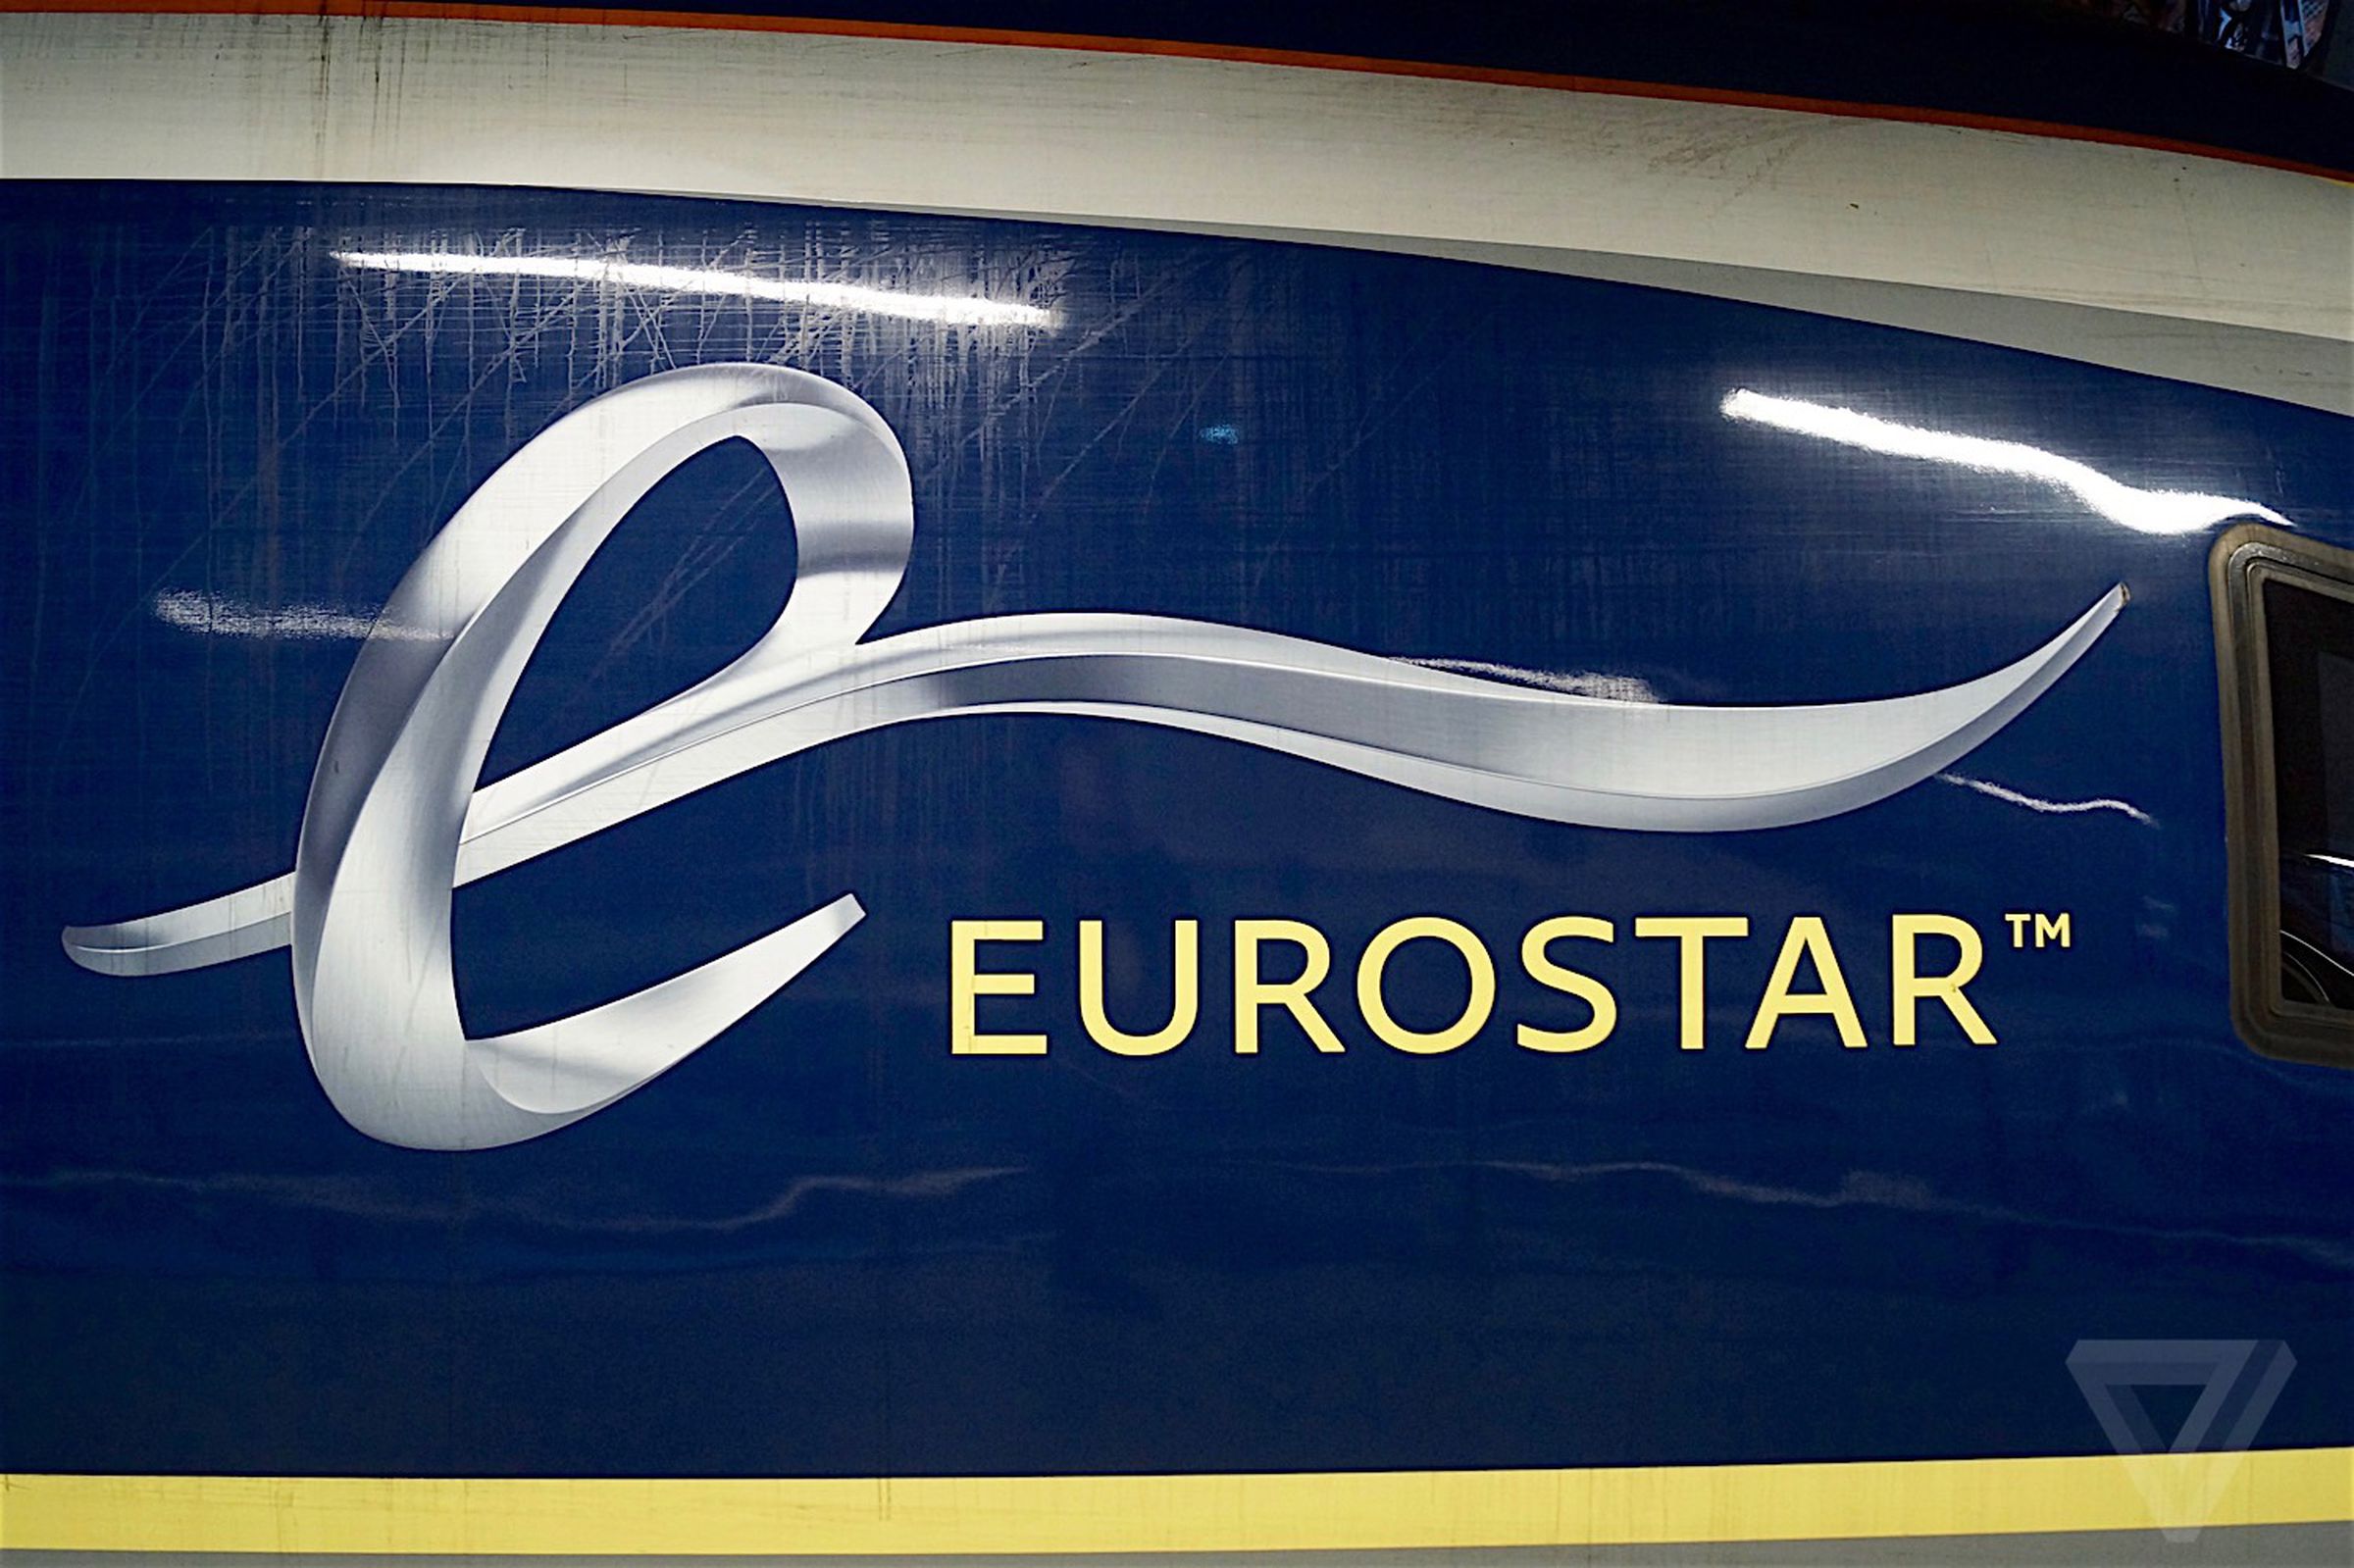 Eurostar e320 trains